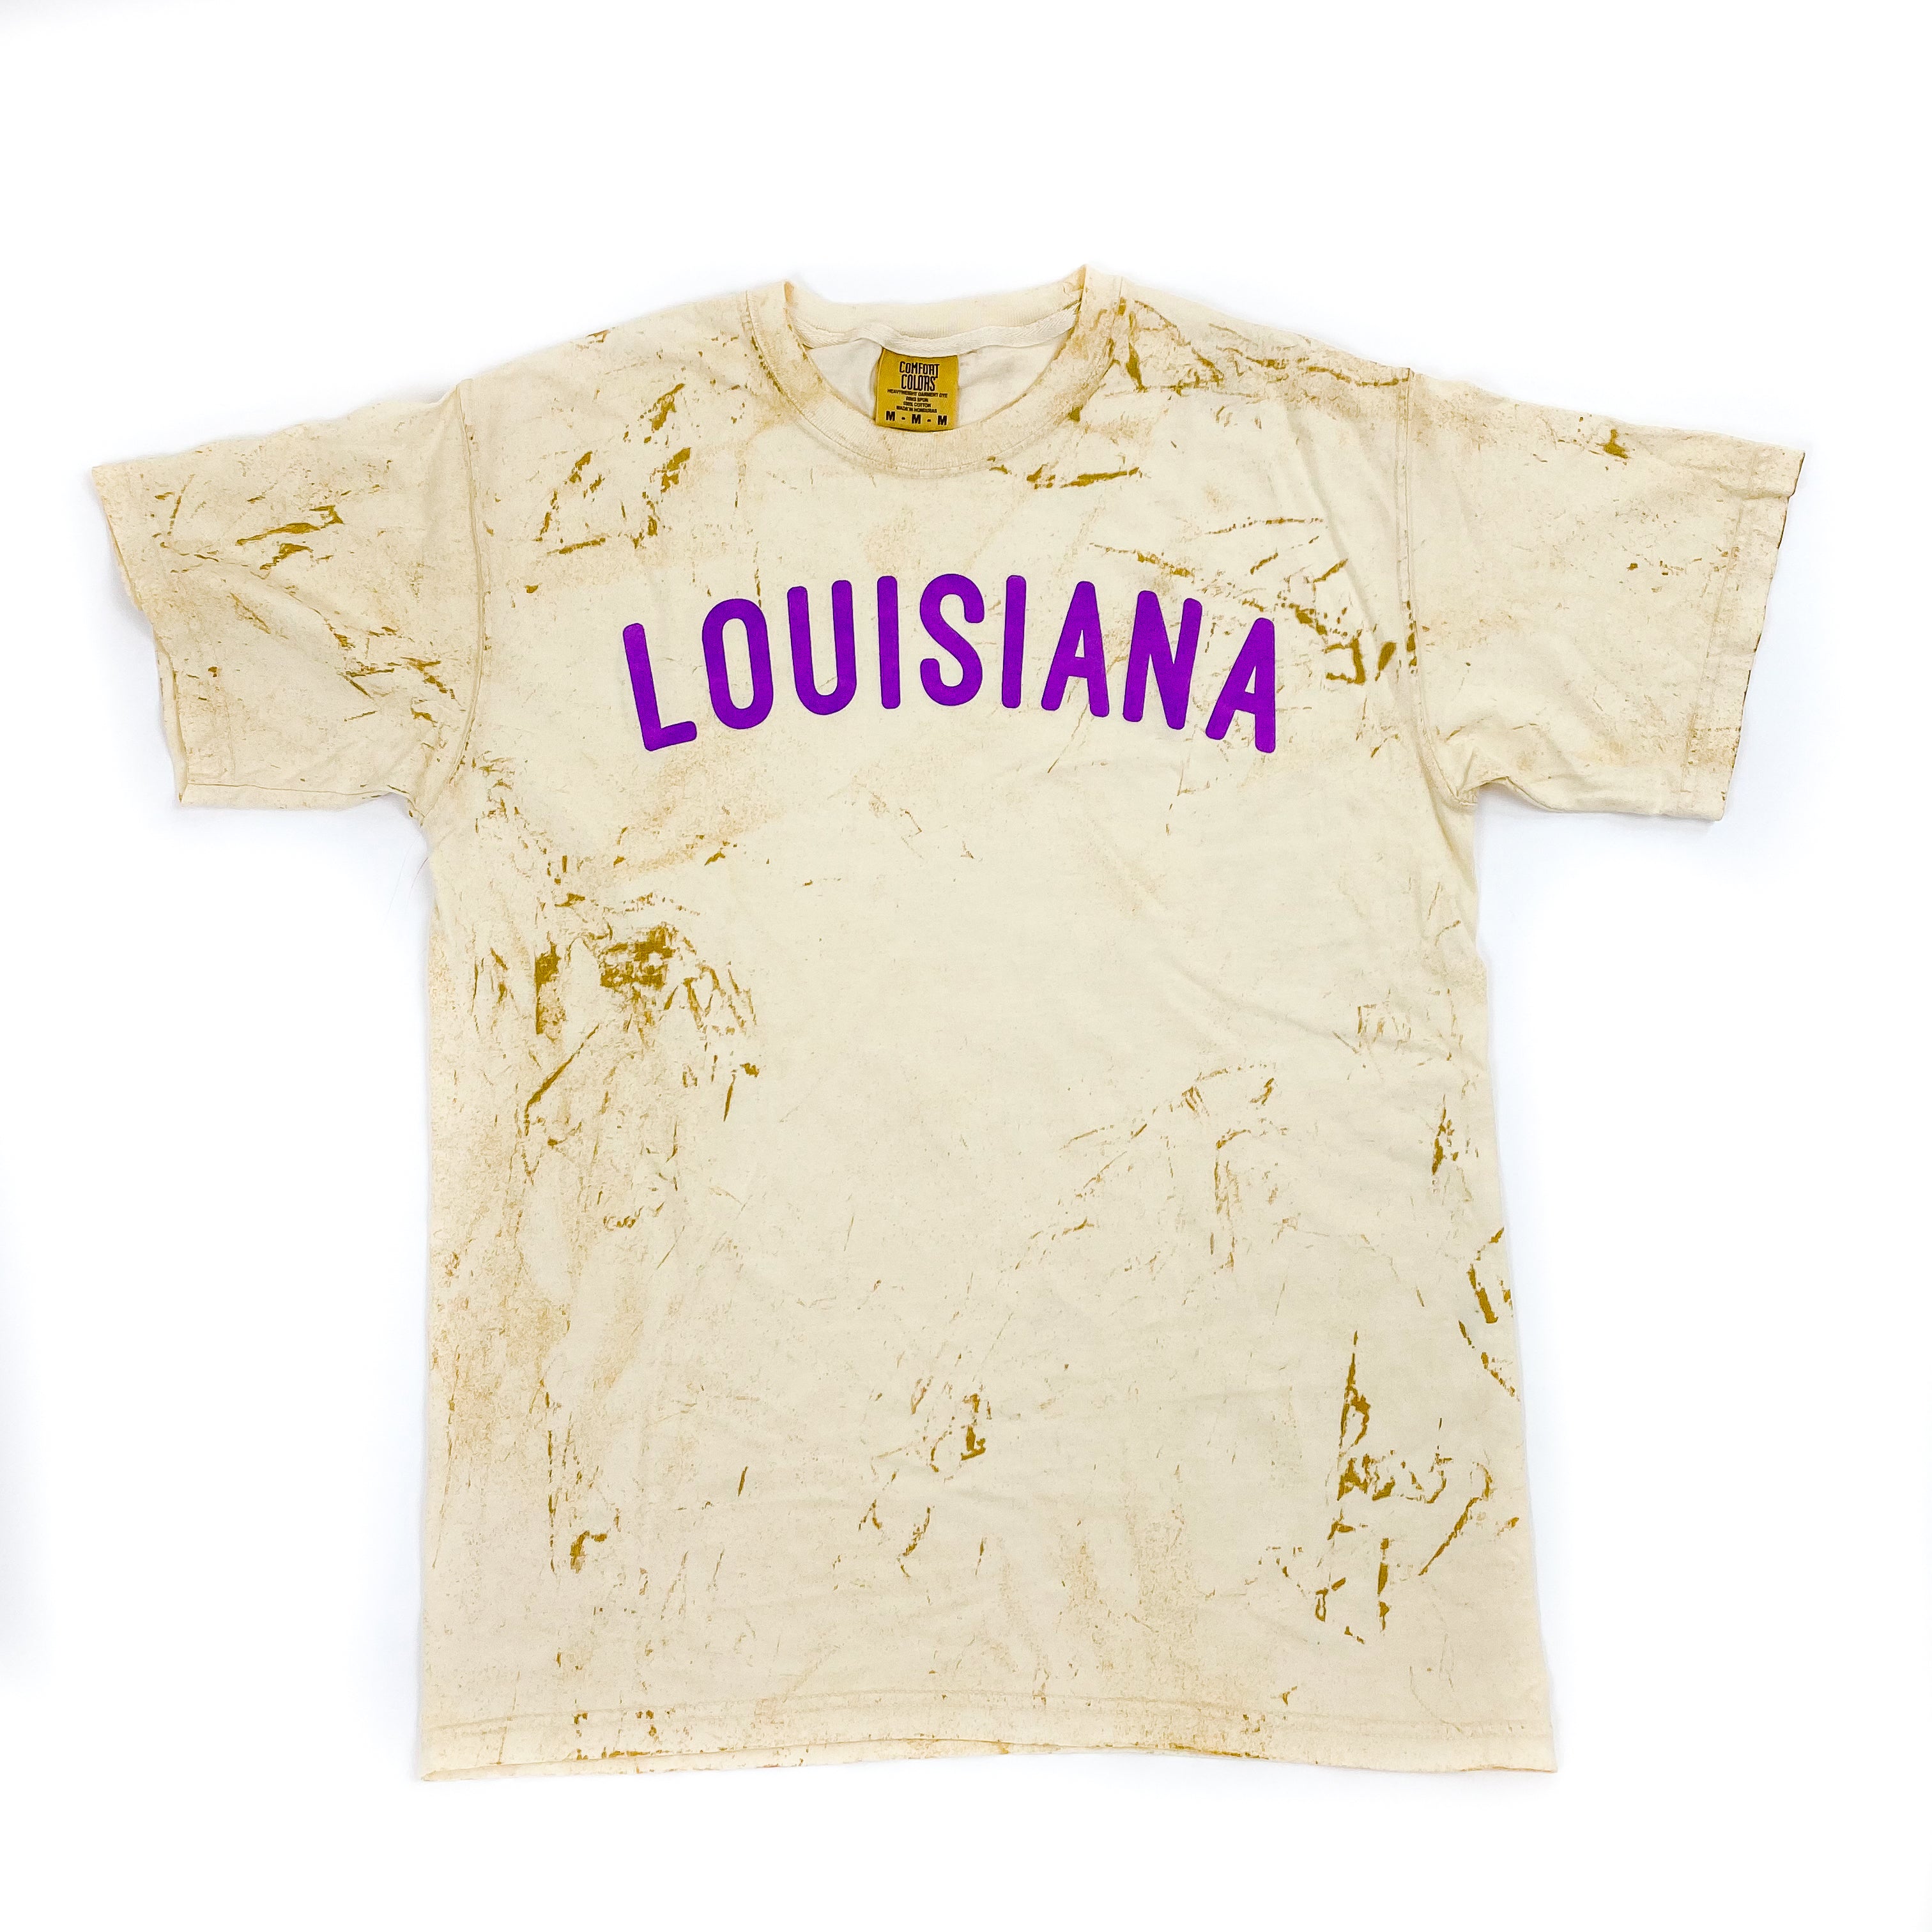 Louisiana Hometown Tie Dye